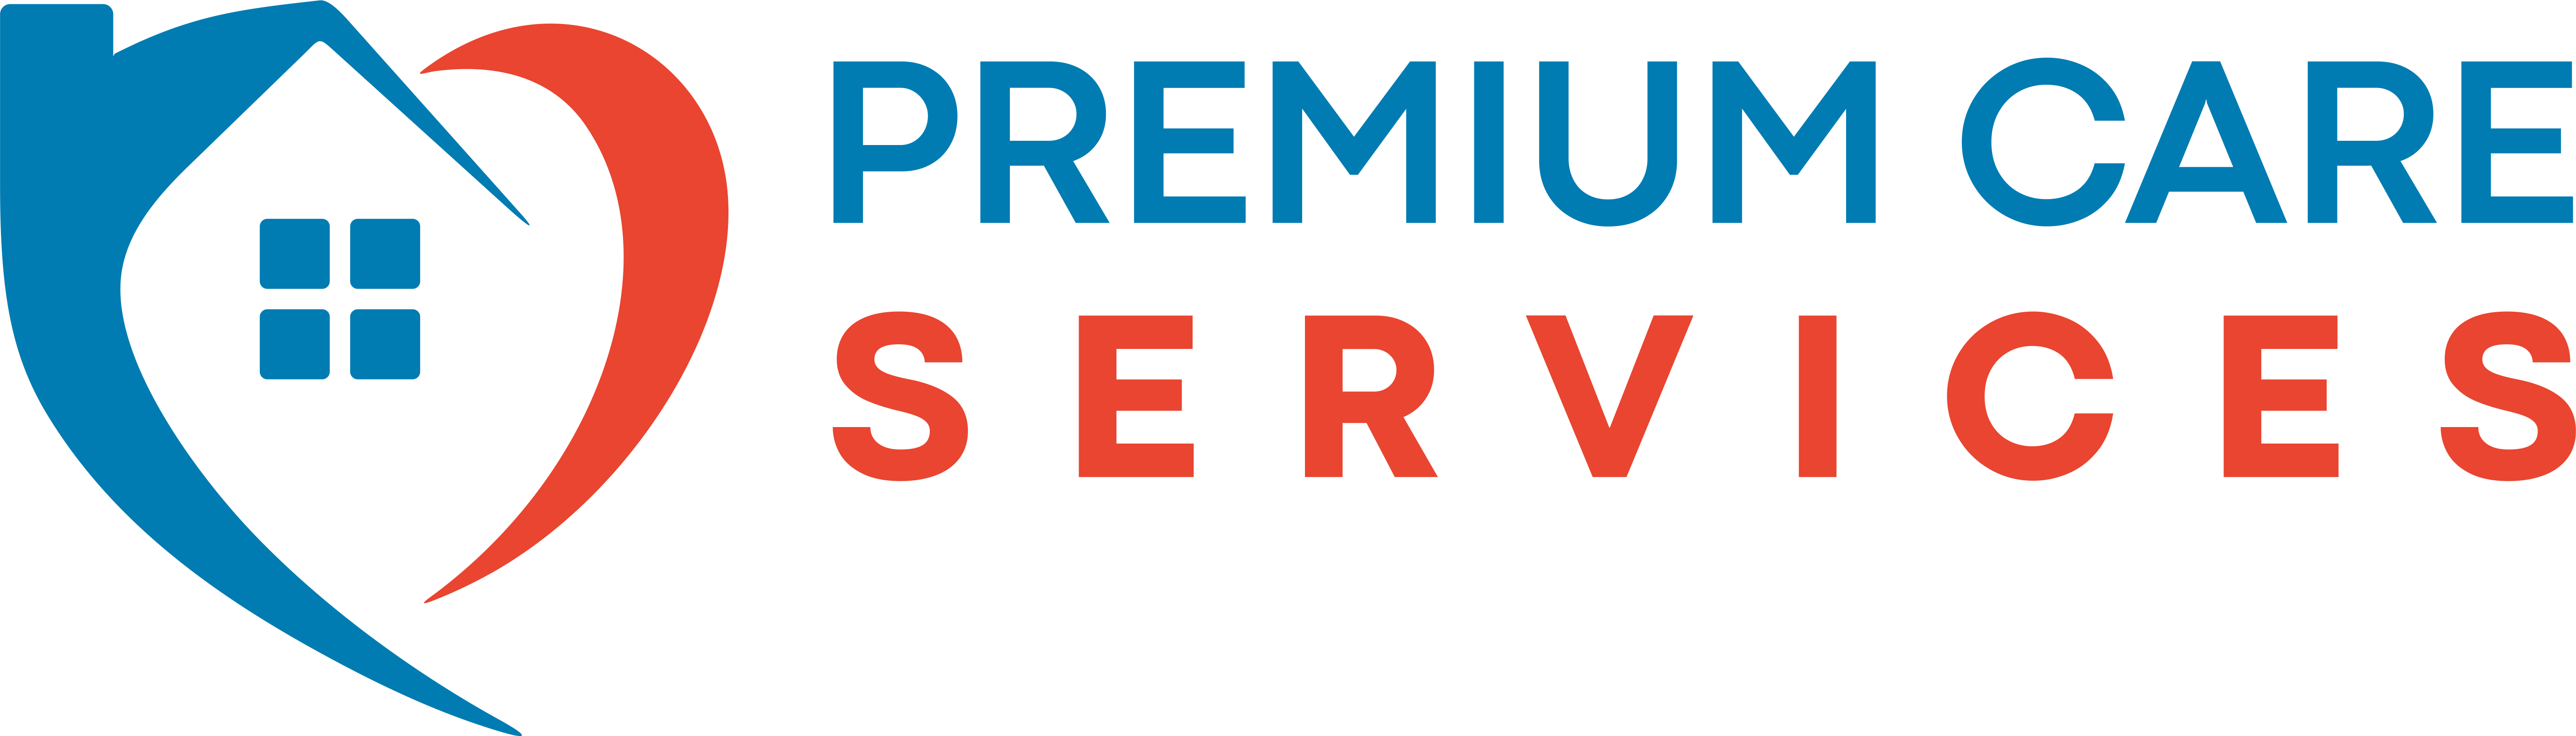 Premium Care Service